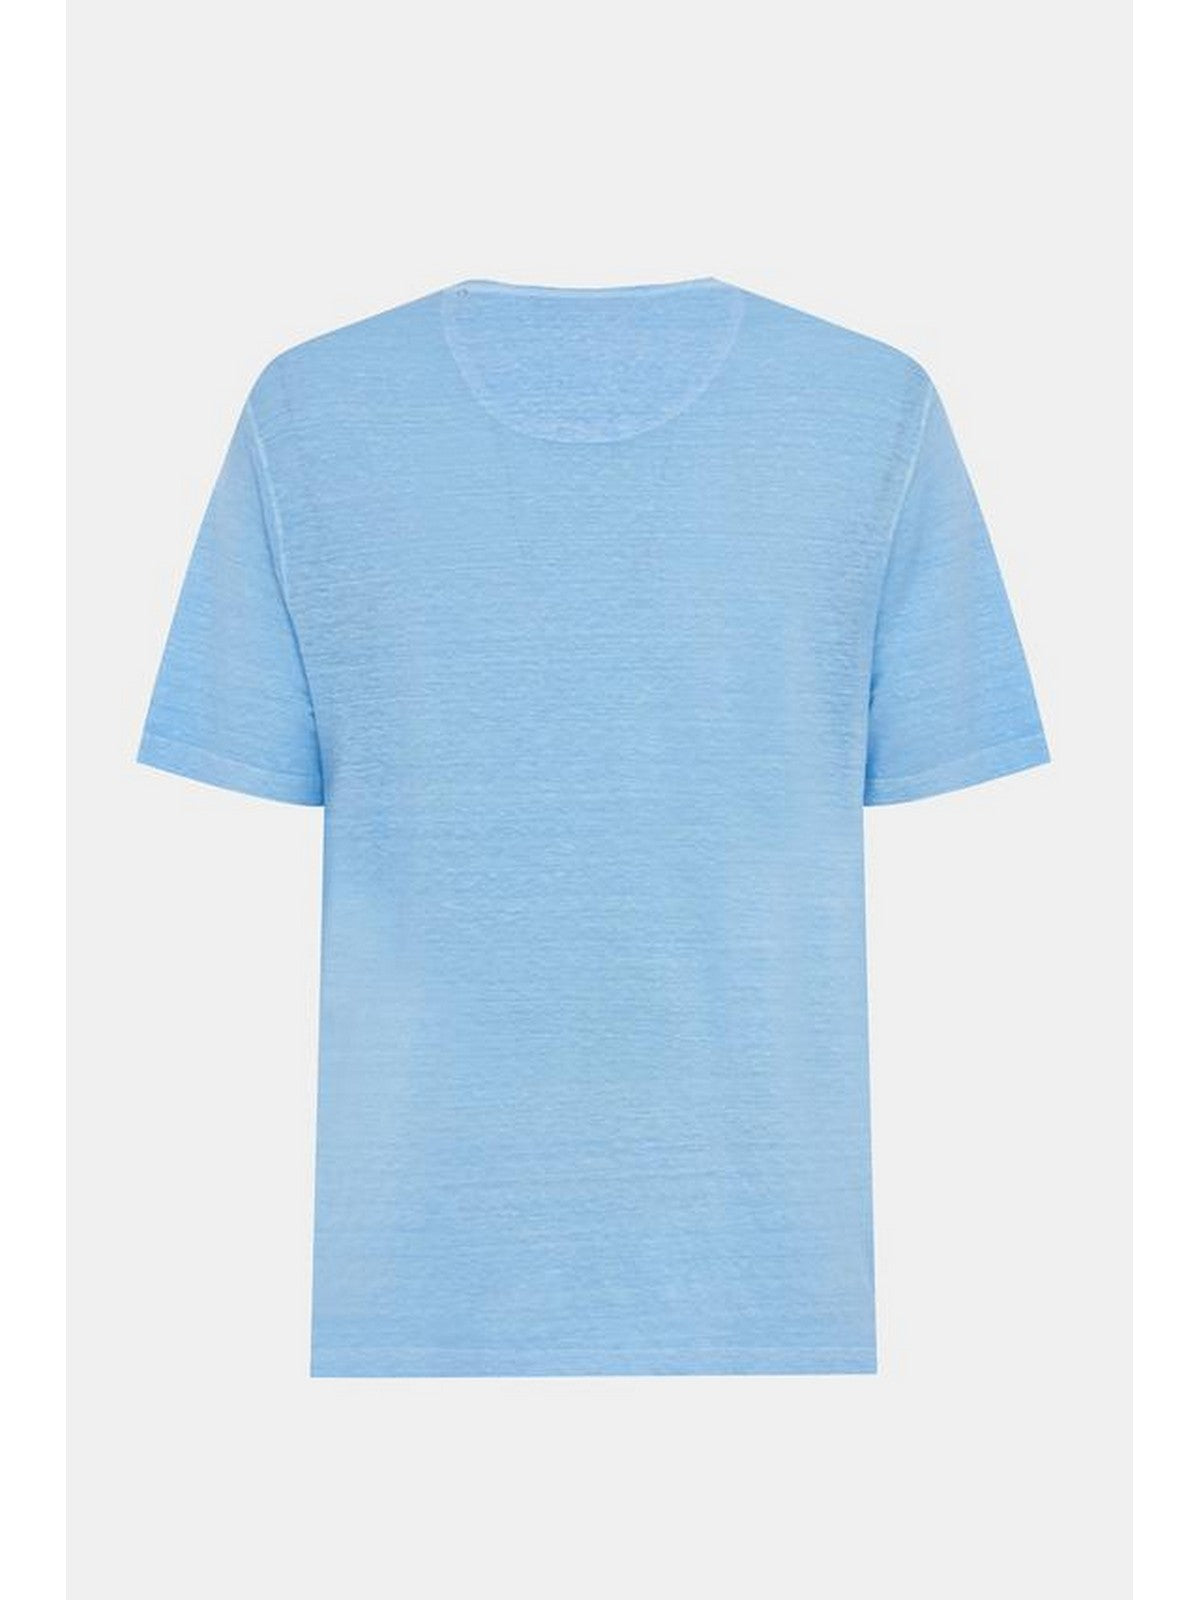 GRAN SASSO T-Shirt e Polo Uomo  60141/78616 570 Blu